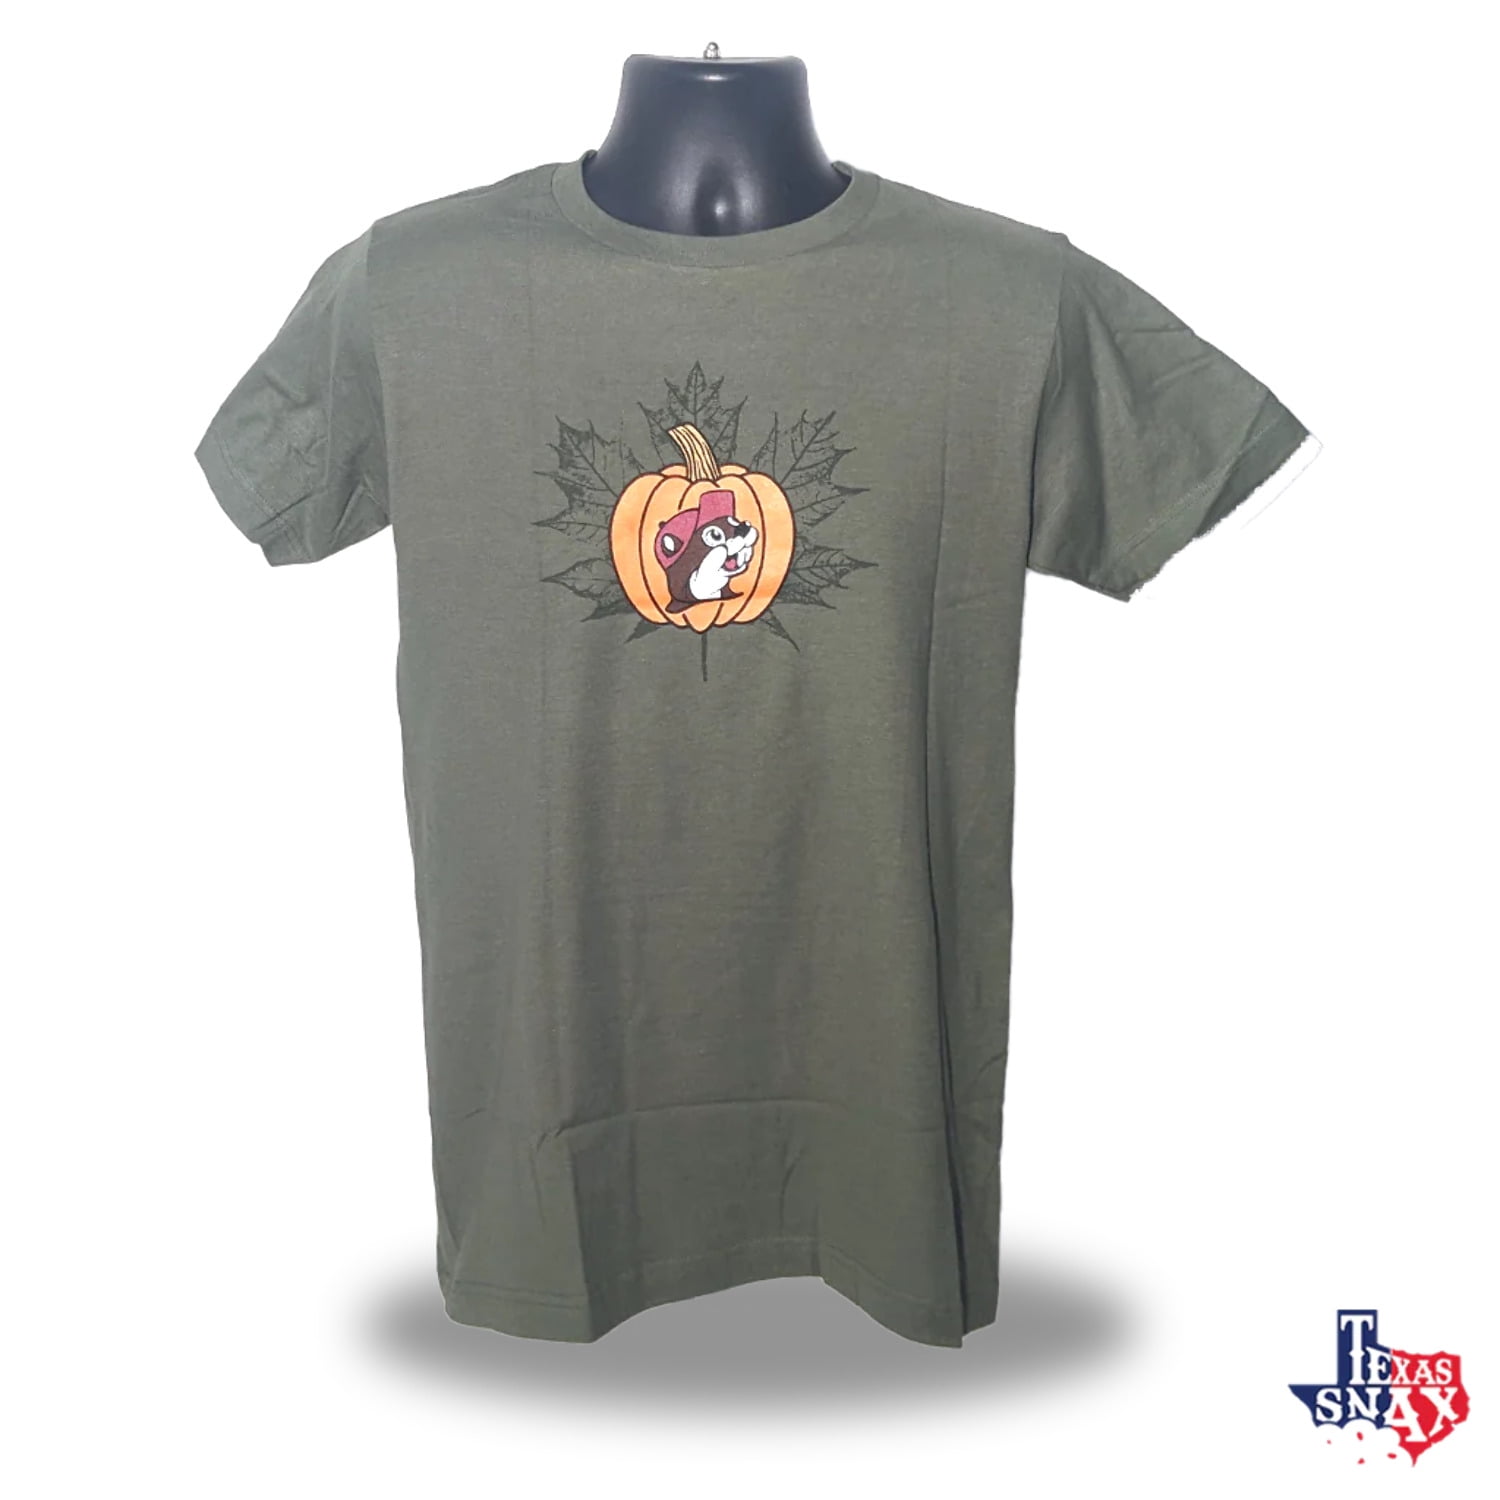 Cafepress Texas Rangers T-Shirt